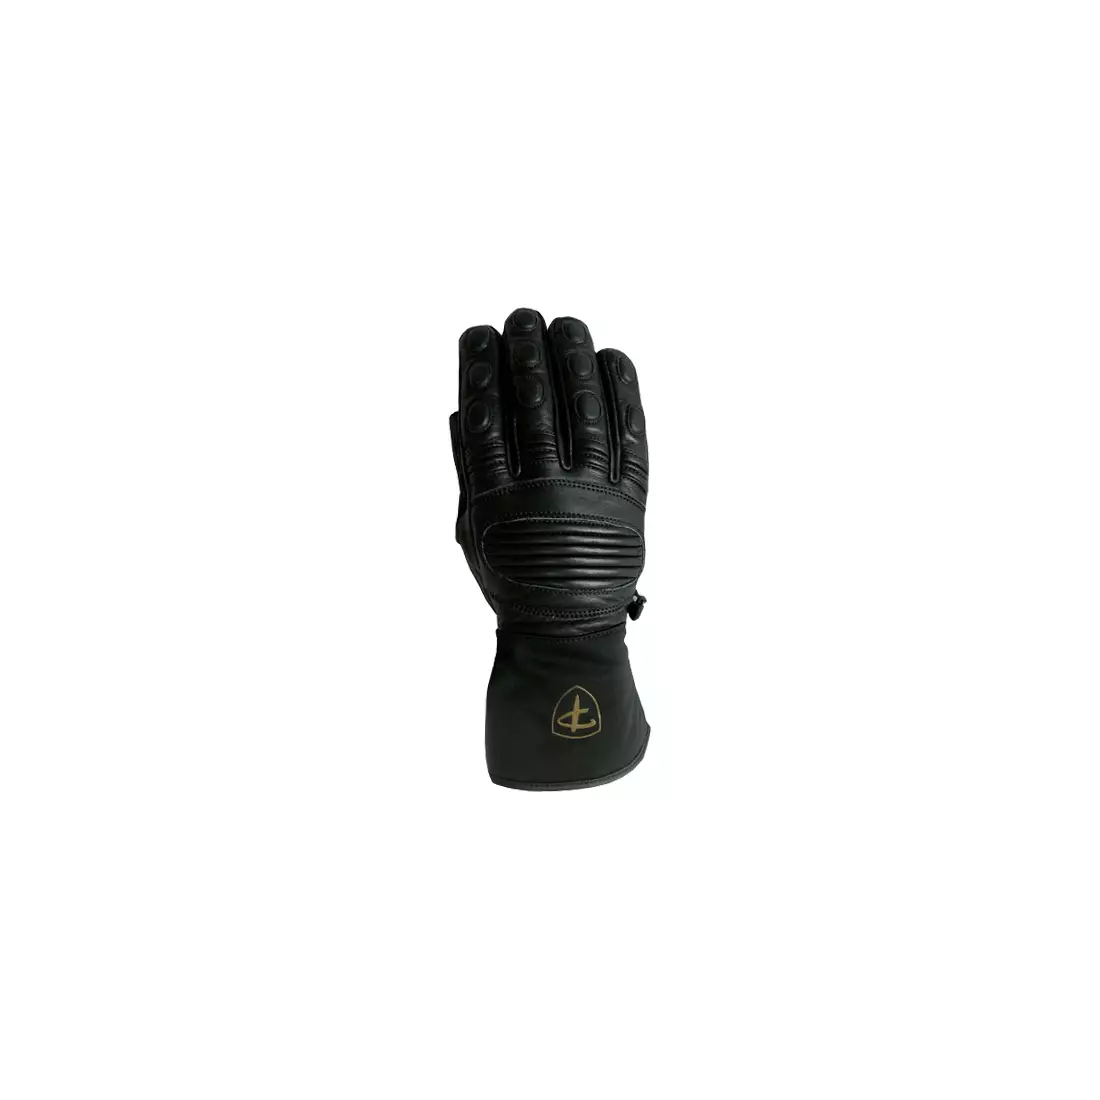 Polednik mănuși de iarnă , SKI PRO 3M, negru